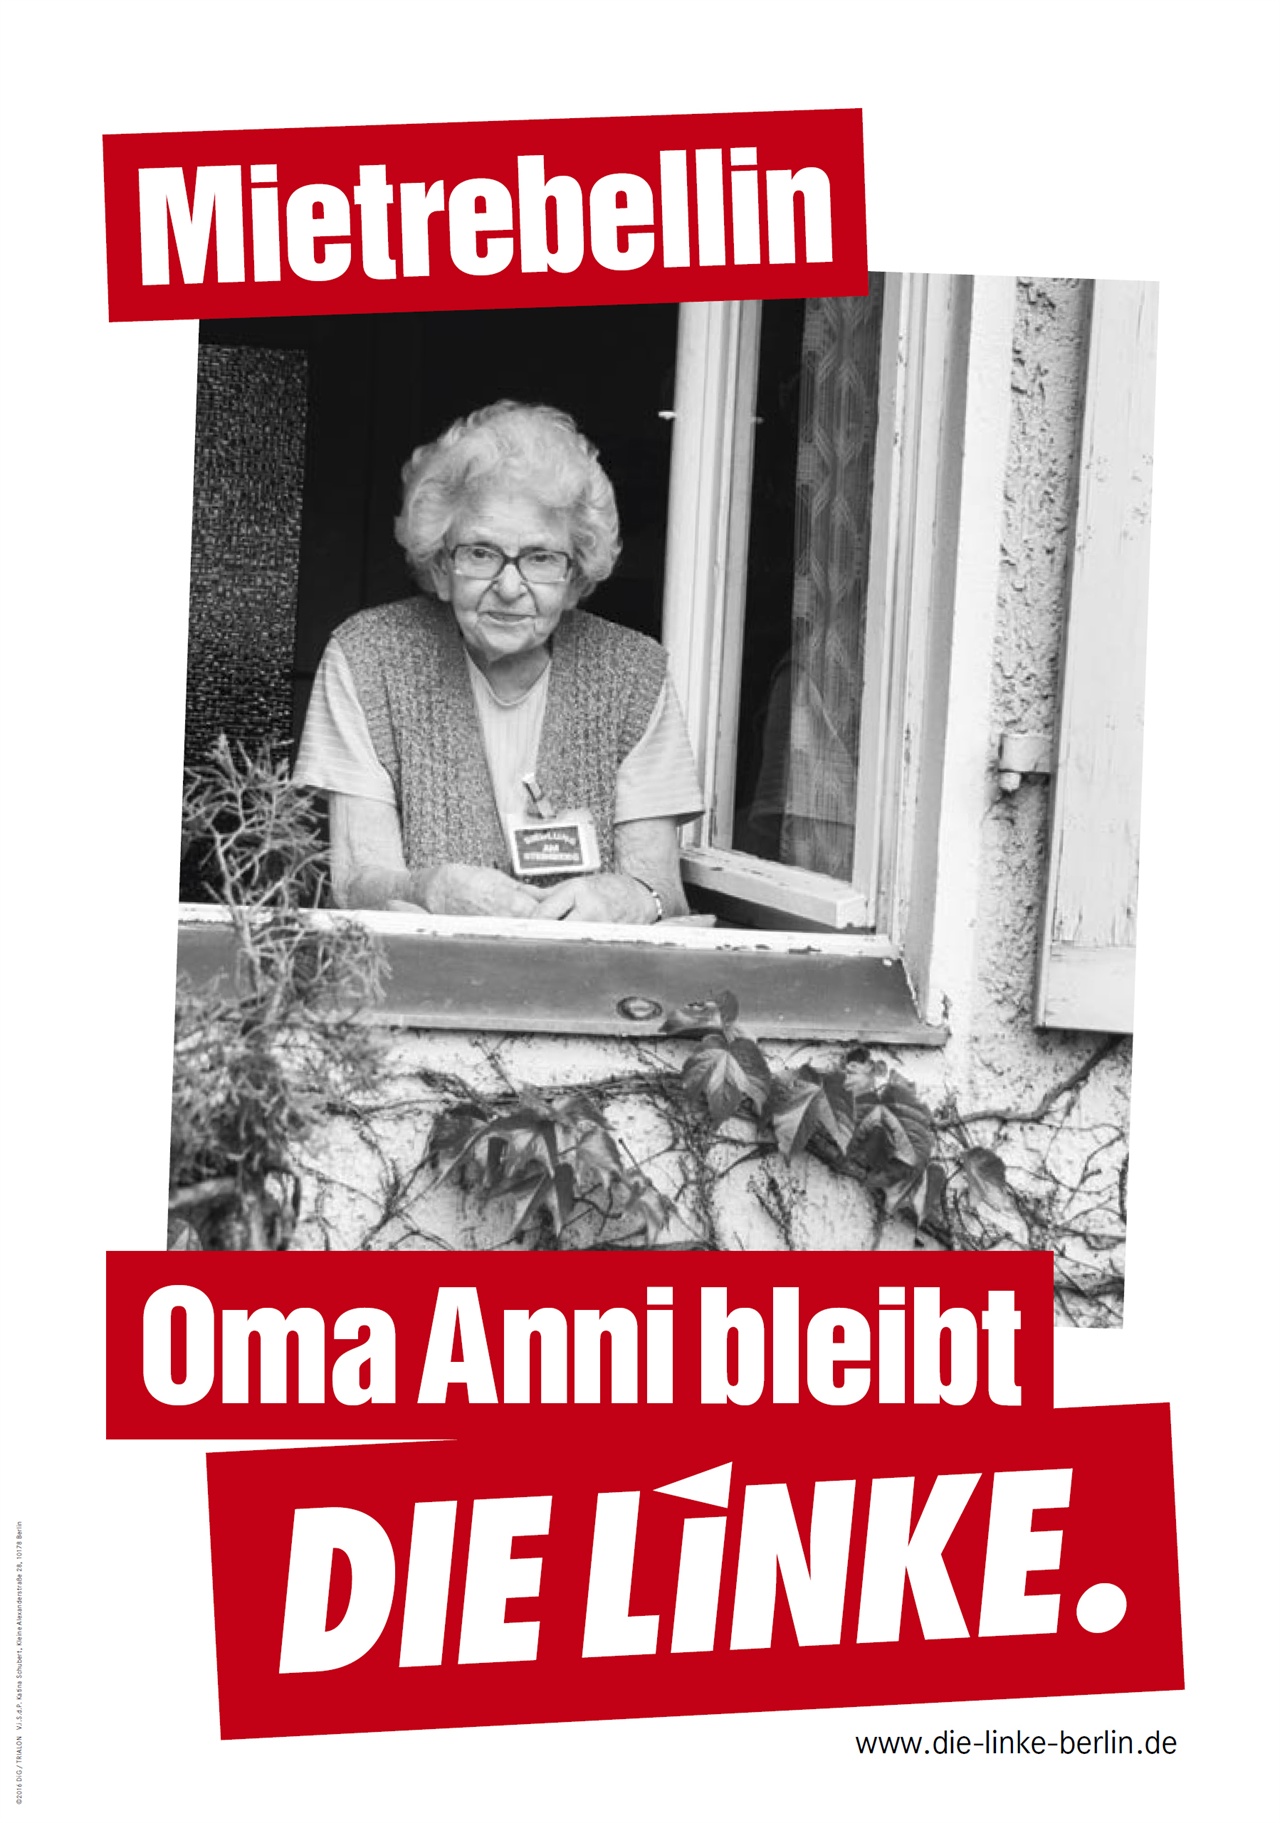 임대료 반항아. “애니 할머니는 (지금 살고 있는 집에) 남는다.” 이 포스터는 베를린 라이니켄도르프Reinickendorf에서 세입자 투쟁을 한, 이제는 하나의 상징이 된 95세 애니 렌즈(Anni Lenz)의 모습을 담았지만 사진을 사용하에 대한 동의를 하지 않은채 사용했다가 논란이 있었다. 게다가 애니 렌즈는 오랜 세월 좌파당이 아닌 사민당을 찍어온 것으로 기사를 통해 밝히면서, 앞으로도 계속 사민당을 뽑을 것이라고 밝히기도 하며 곤욕을 치르기까지 했다.
